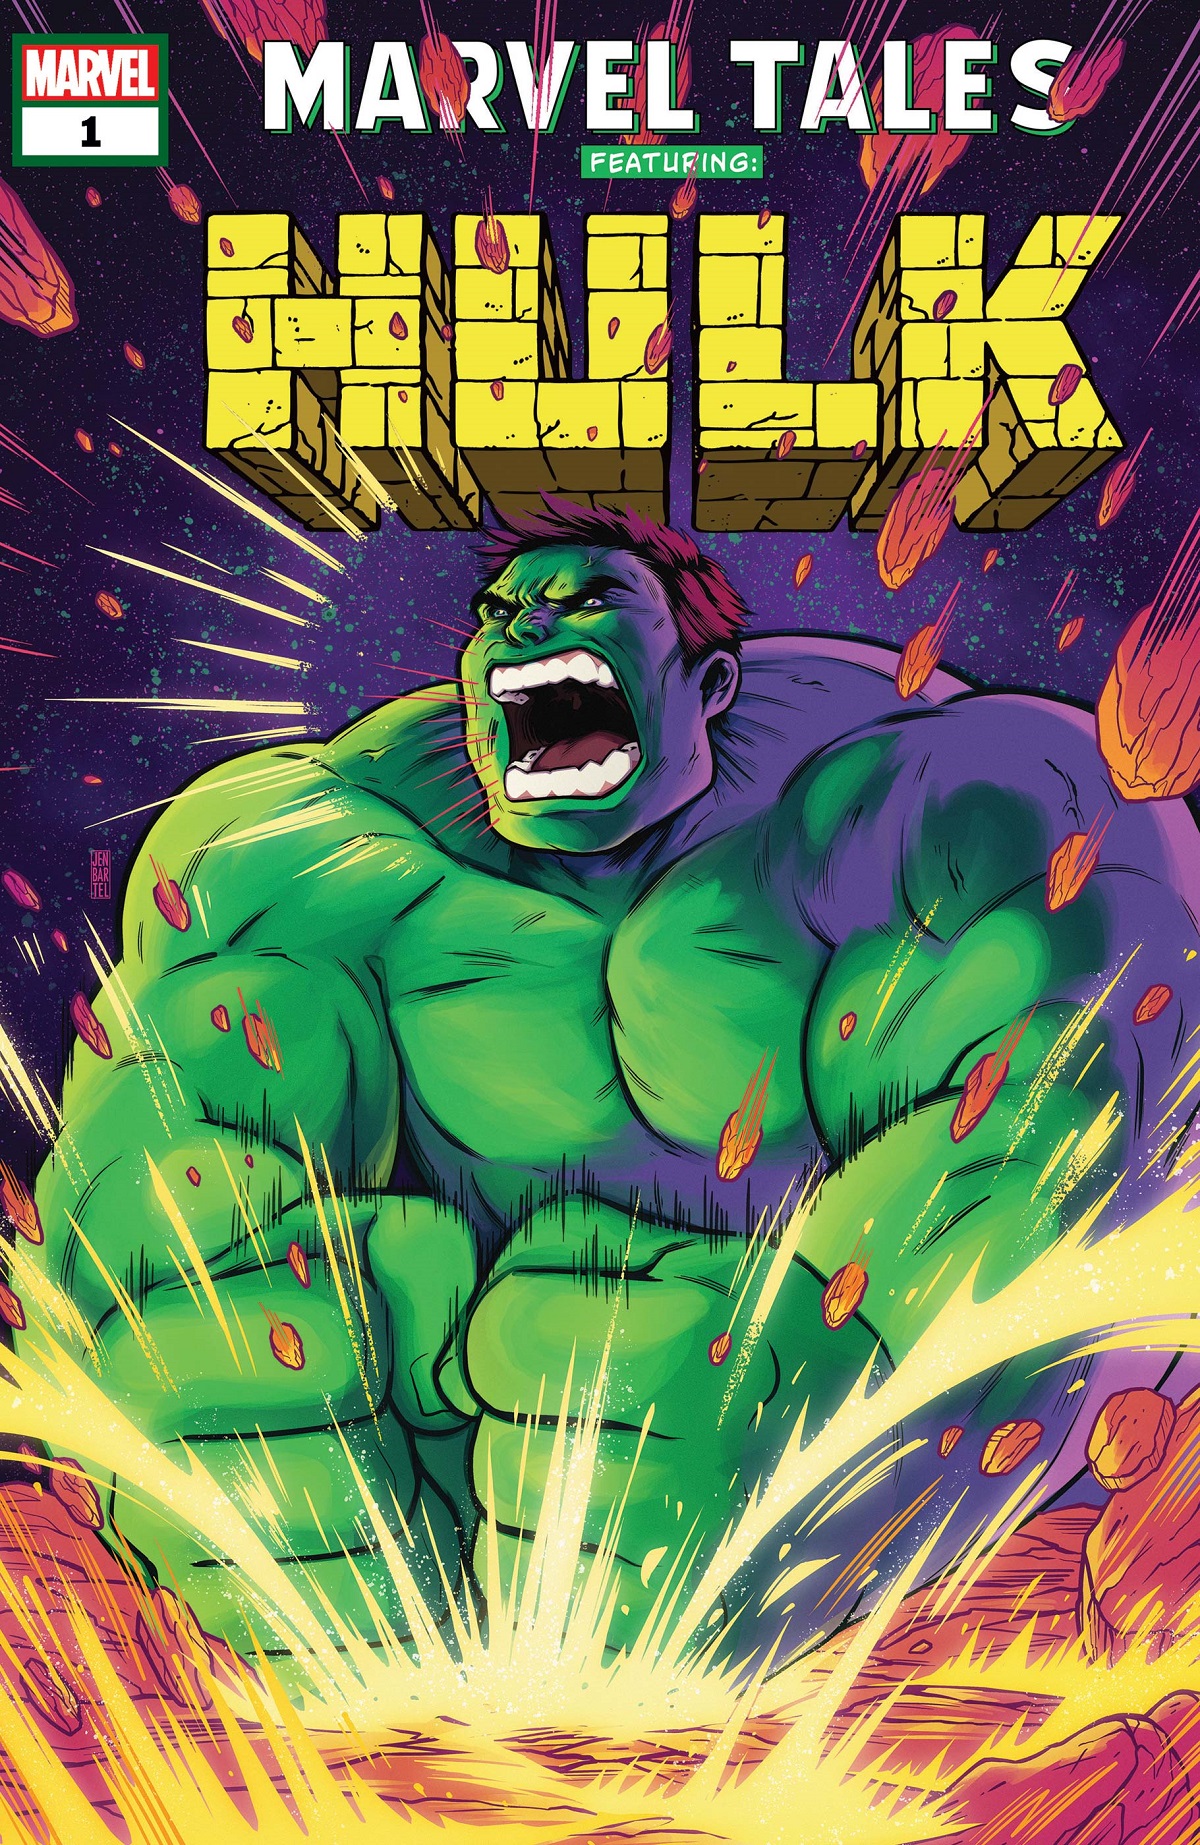 Marvel Tales: Hulk (Trade Paperback)